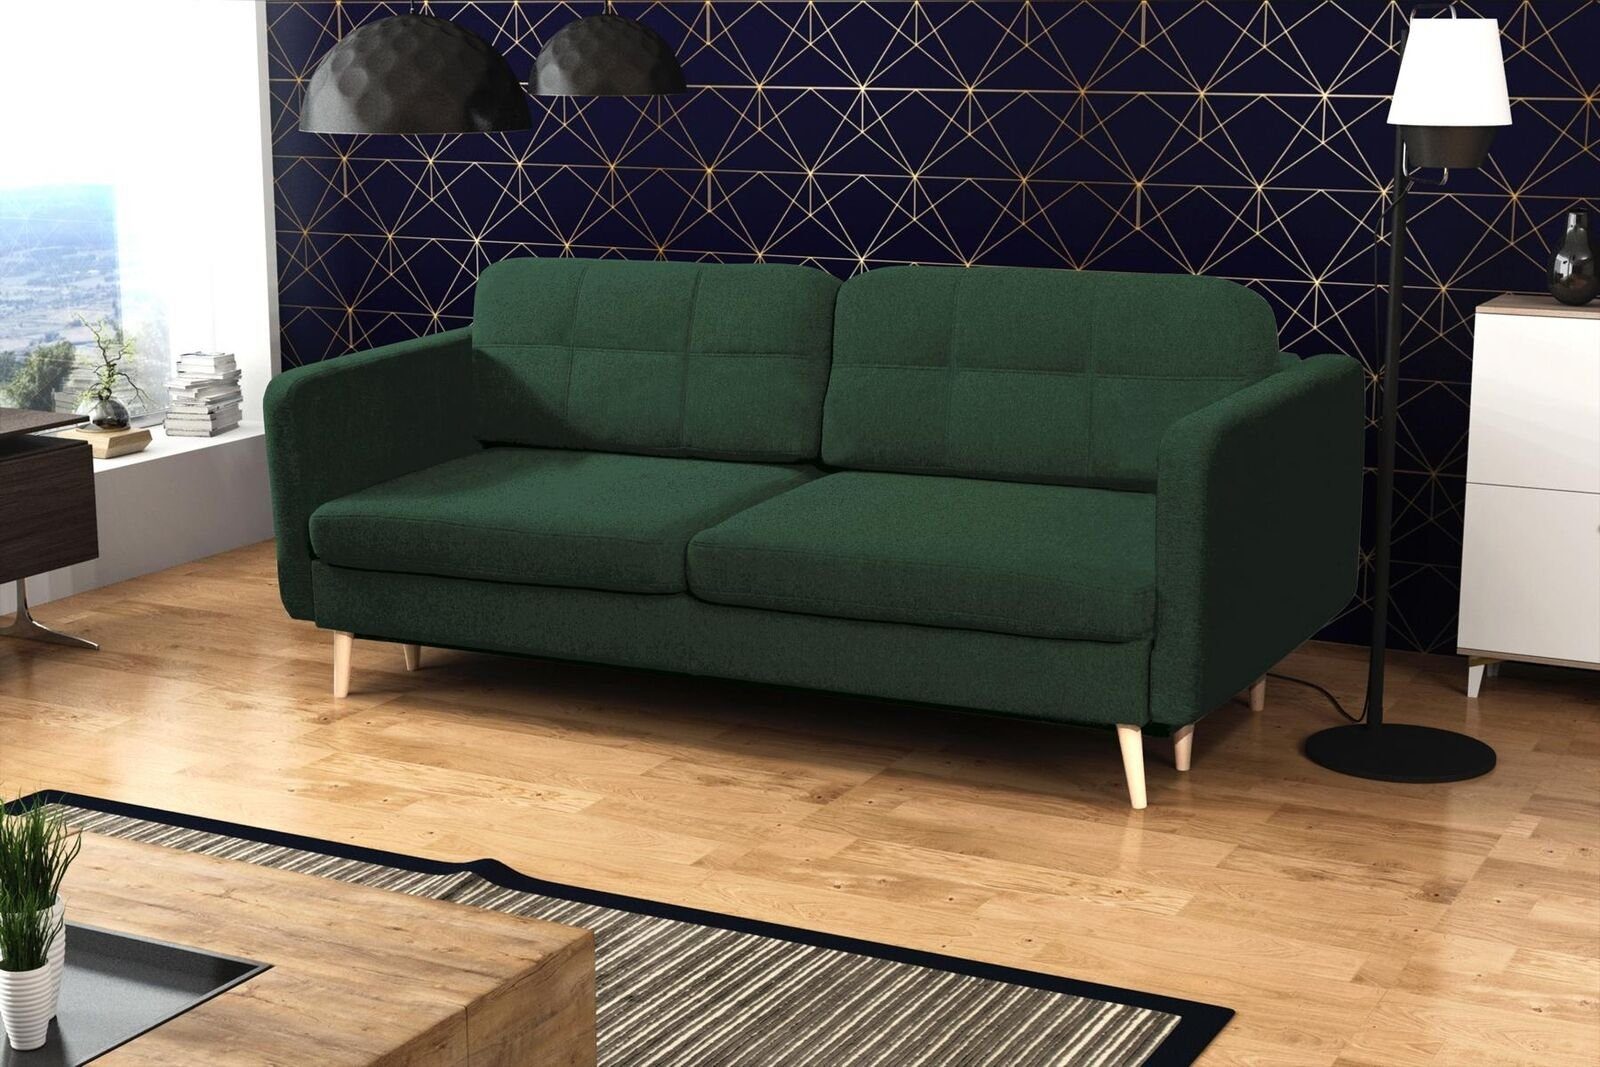 JVmoebel Sofa, Schlafsofa Luxus Designer Sofa 3 Sitzer Möbel Polster Textil Blaue Grün